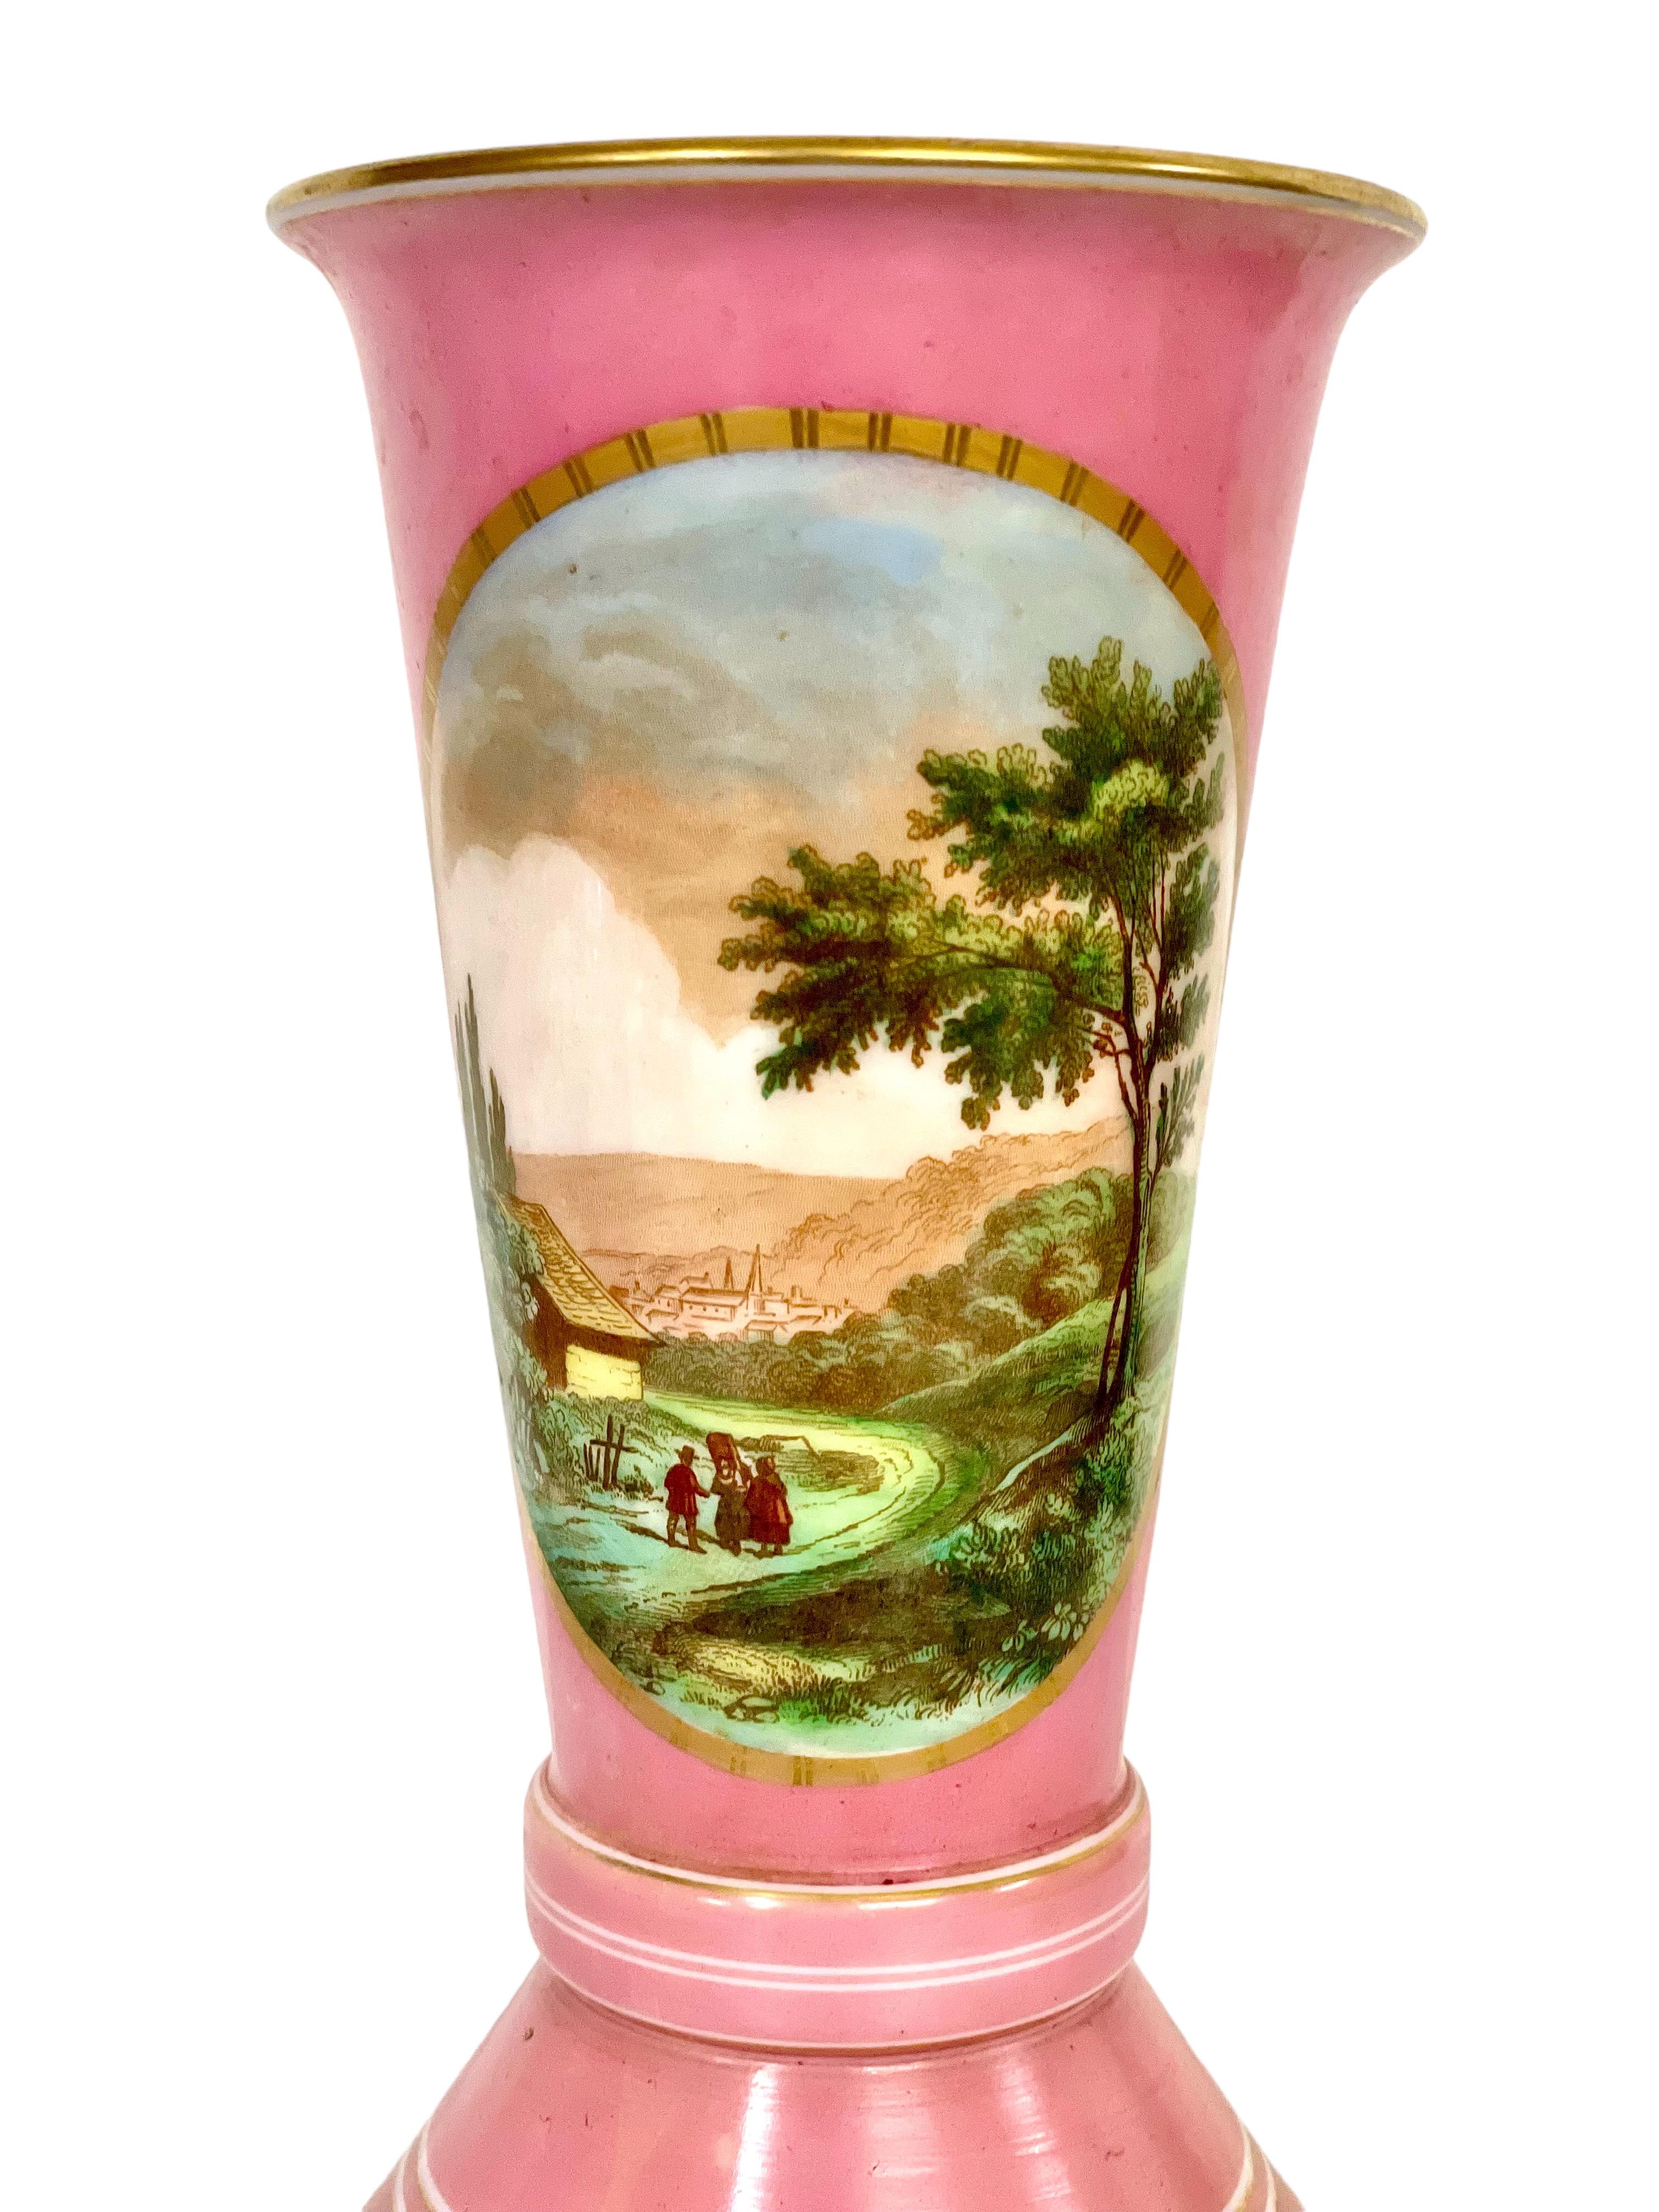 Eine sehr hübsche rosafarbene Opalvase im Stil von Sèvres, mundgeblasen und durchgehend mit vergoldeten Bändern und Akzenten verziert. Der hohe und sanft ausladende Hals ist mit einer wunderschönen handgemalten Szene von Figuren in einer ländlichen